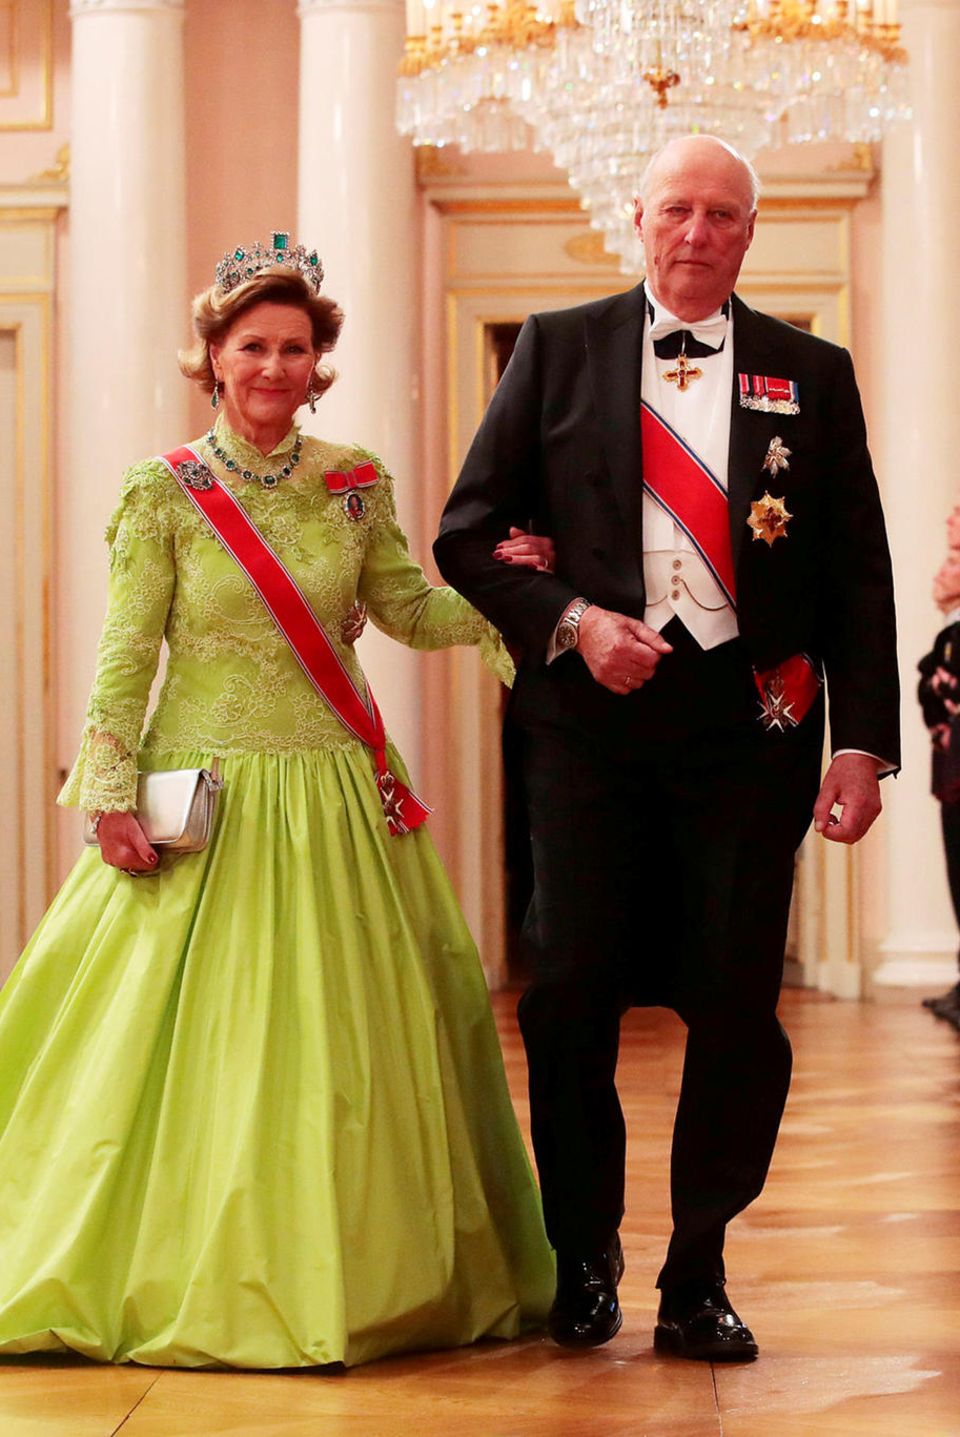 Vorbei am Spalier der Palast-Garde schreitet das norwegische Königspaar Sonja und Harald zum festlichen Gala-Dinner anlässlich der Feierlichkeiten zu ihrem 80. Geburtstag. Königin Sonja überrascht im neonfarbenen Ballkleid, das sie mit dem prächtigen Smaragd-Geschmeide der Kaiserin Josephine kombinierte.